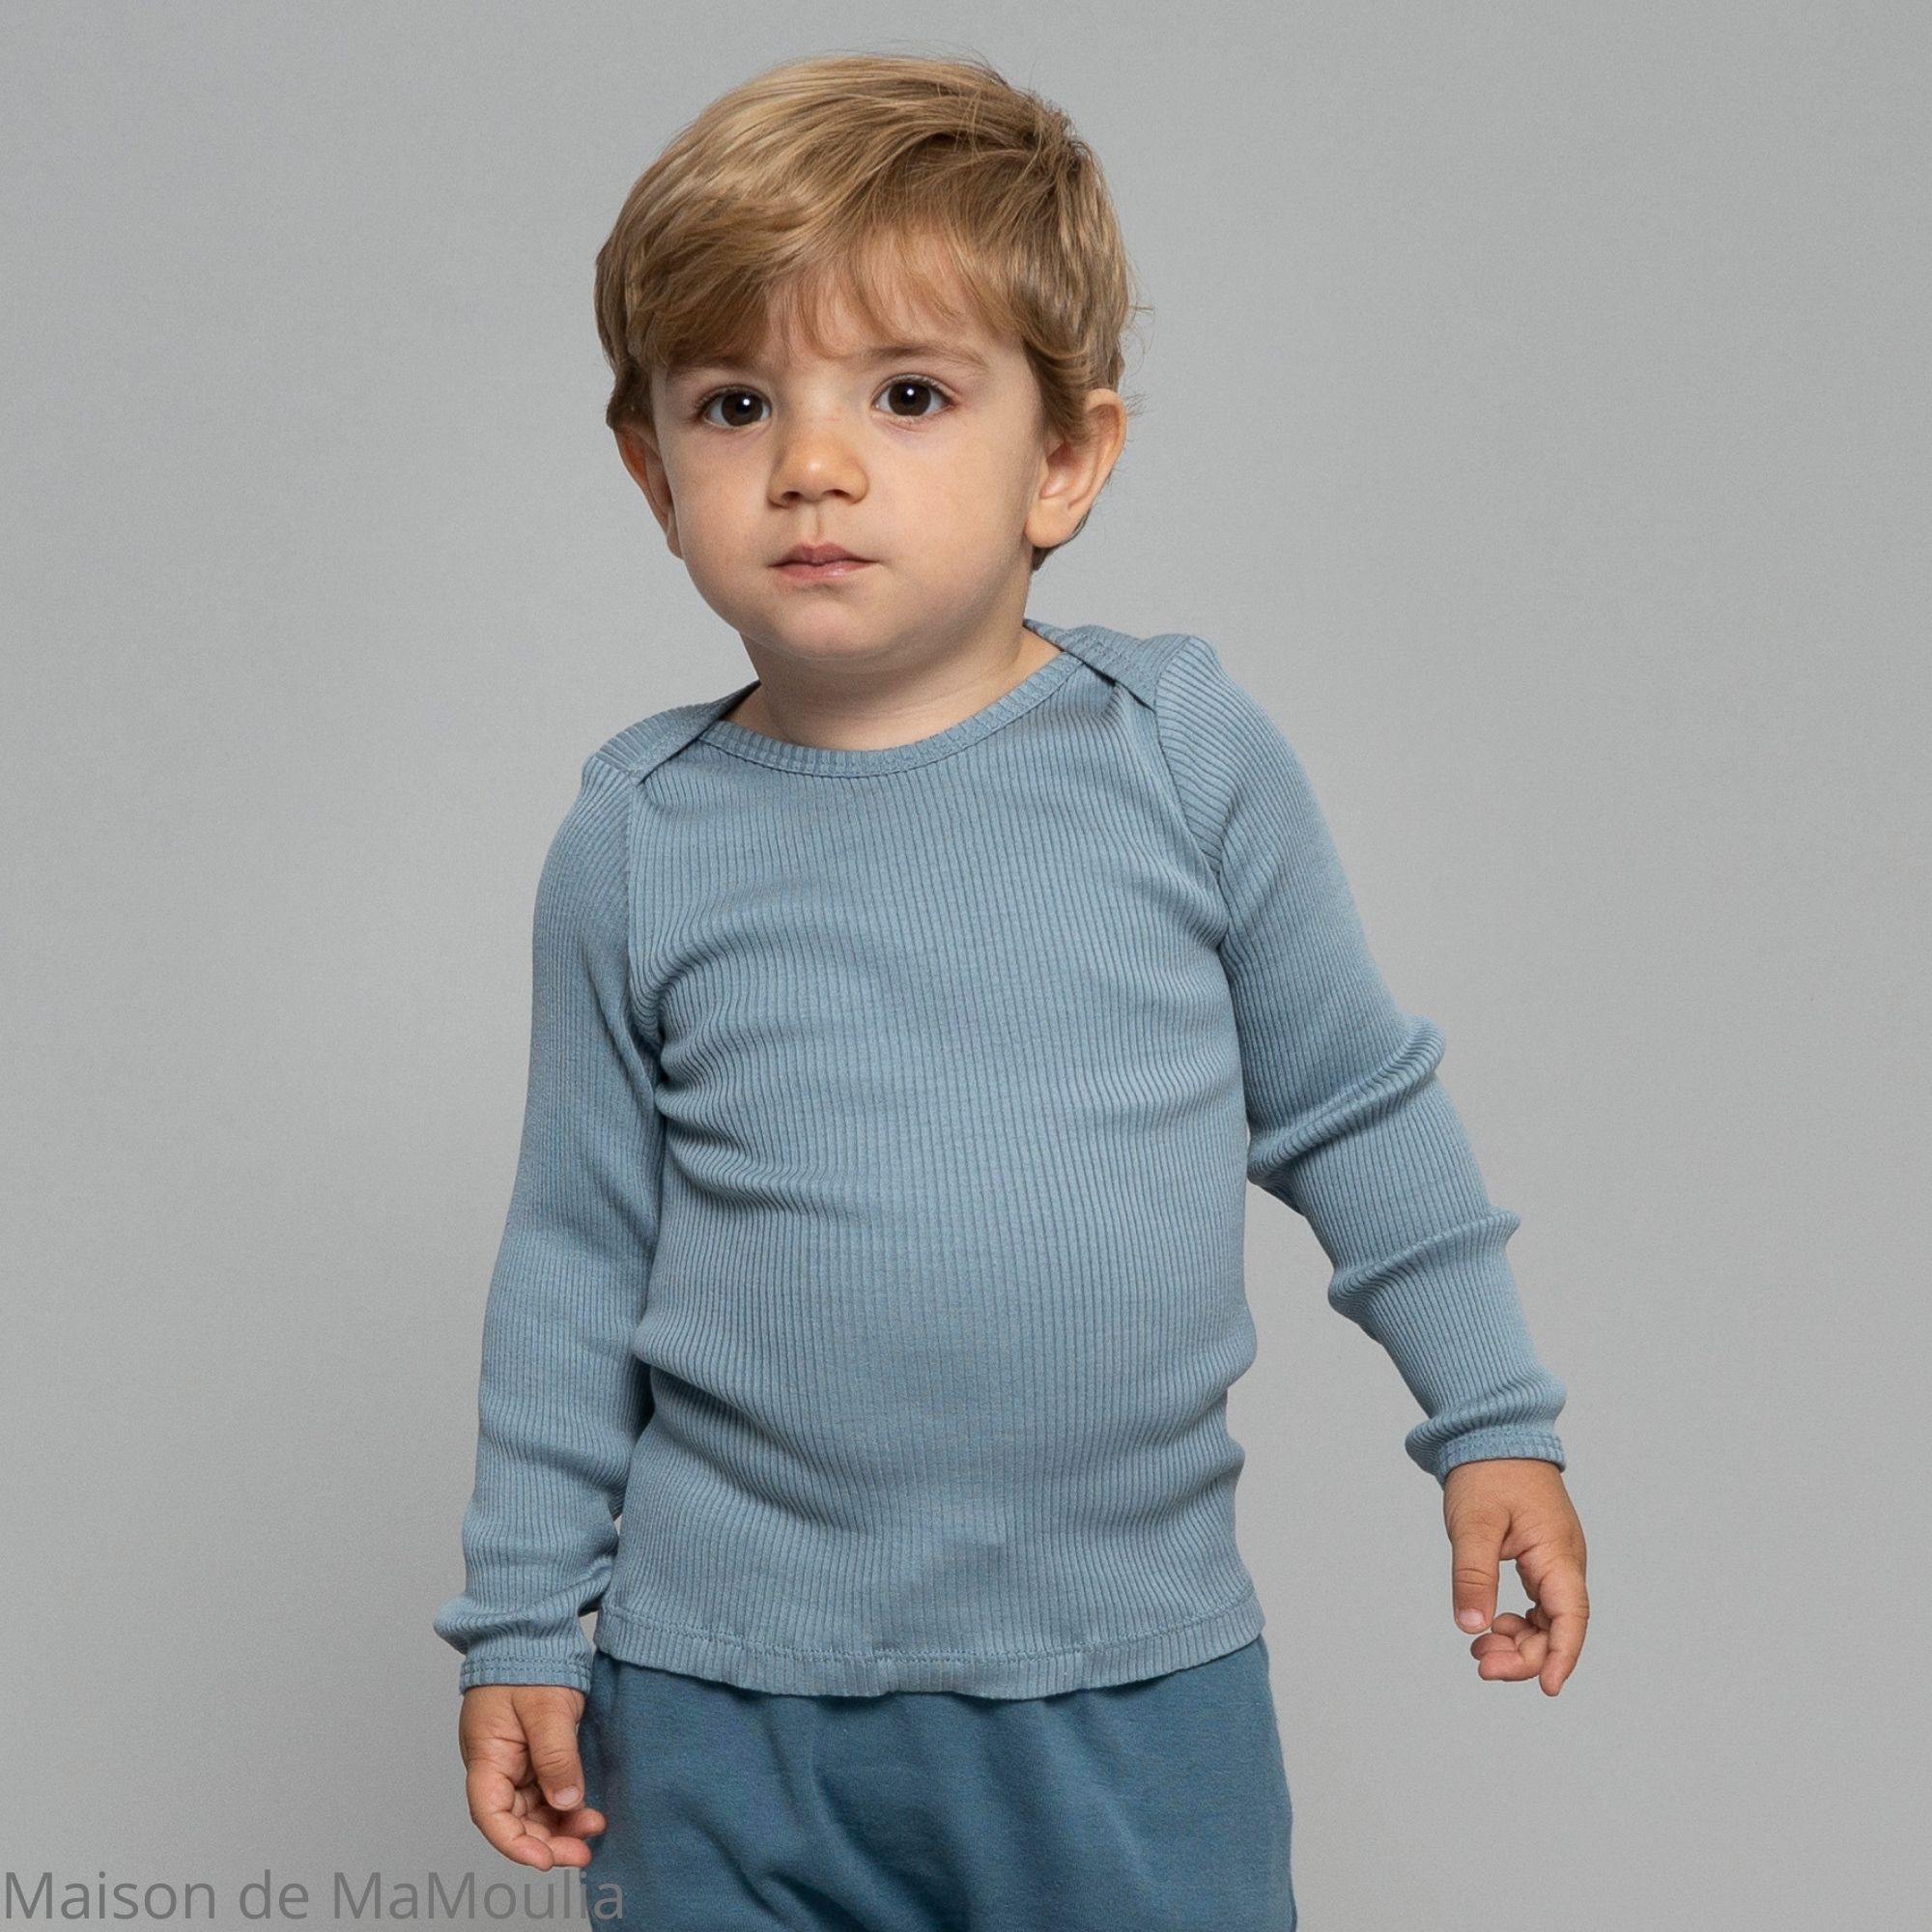 belfast-tshirt-haut-manches-longues-bebe-enfant-soie-coton-minimalisma-maison-de-mamoulia-bleu-clair--